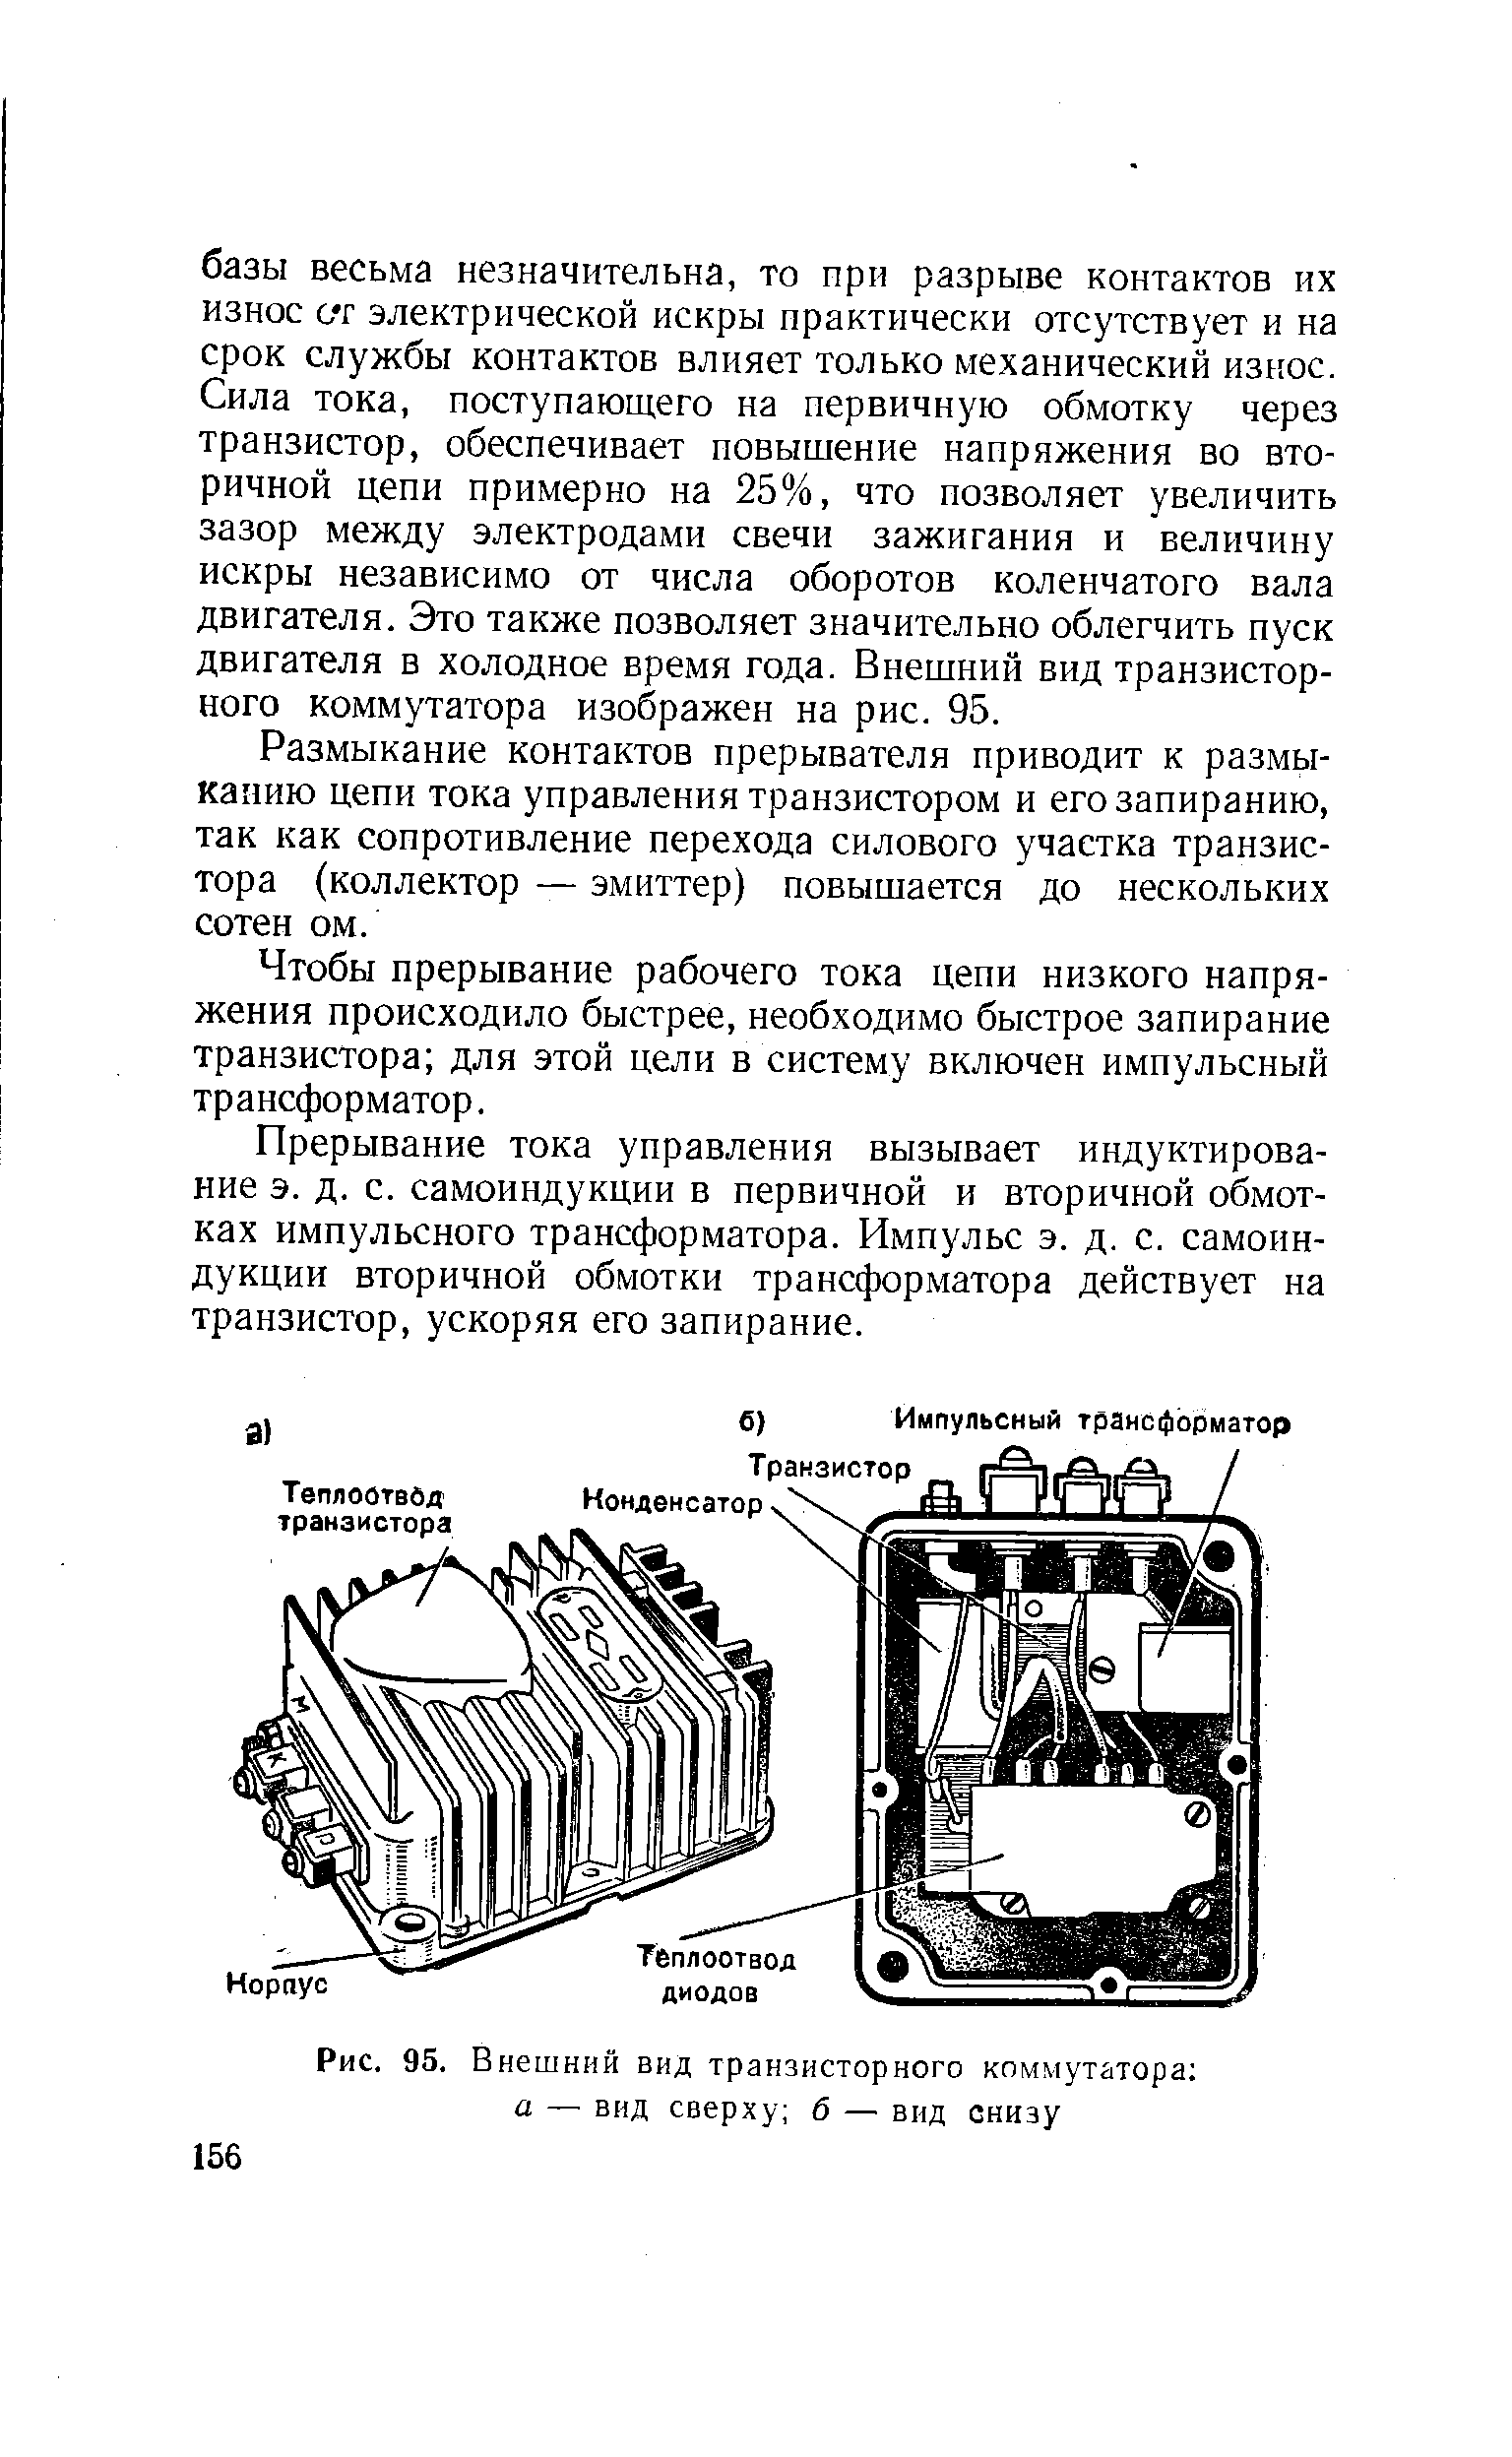 Рис. 95. Внешний вид транзисторного коммутатора а — вид сверху б — вид снизу
